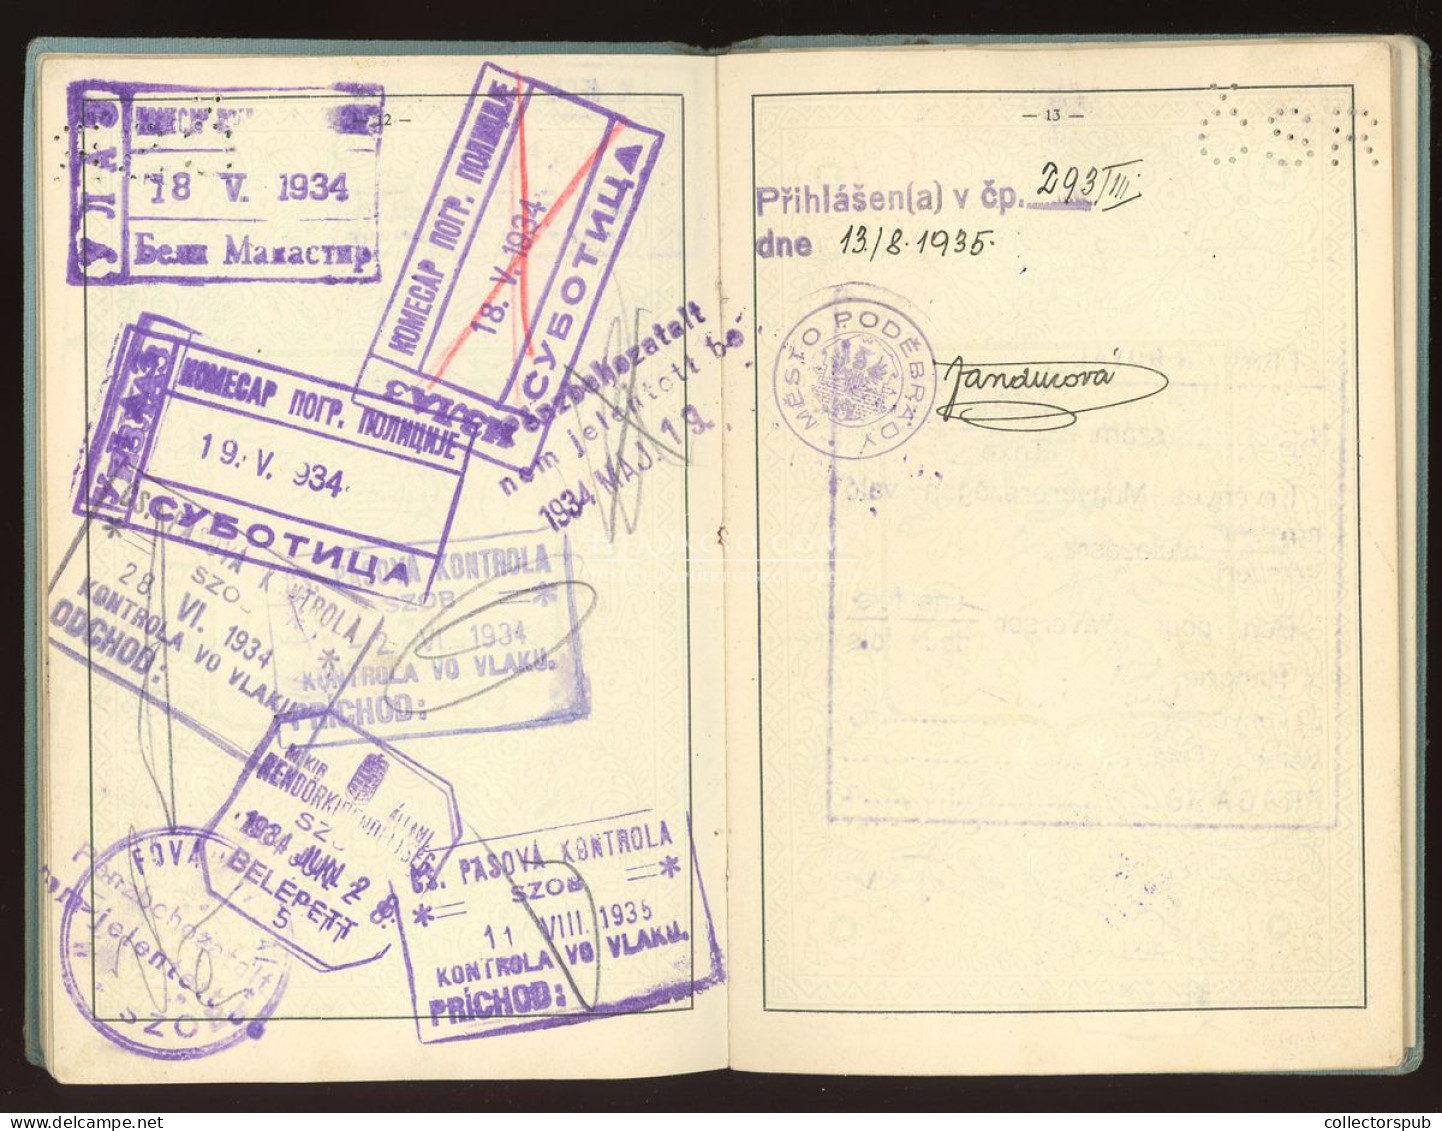 ÚTLEVÉL 1933. Csehszlovát útlevél, magyar személy részére, konzuli illetékbélyegekkel, érdekes darab! passport